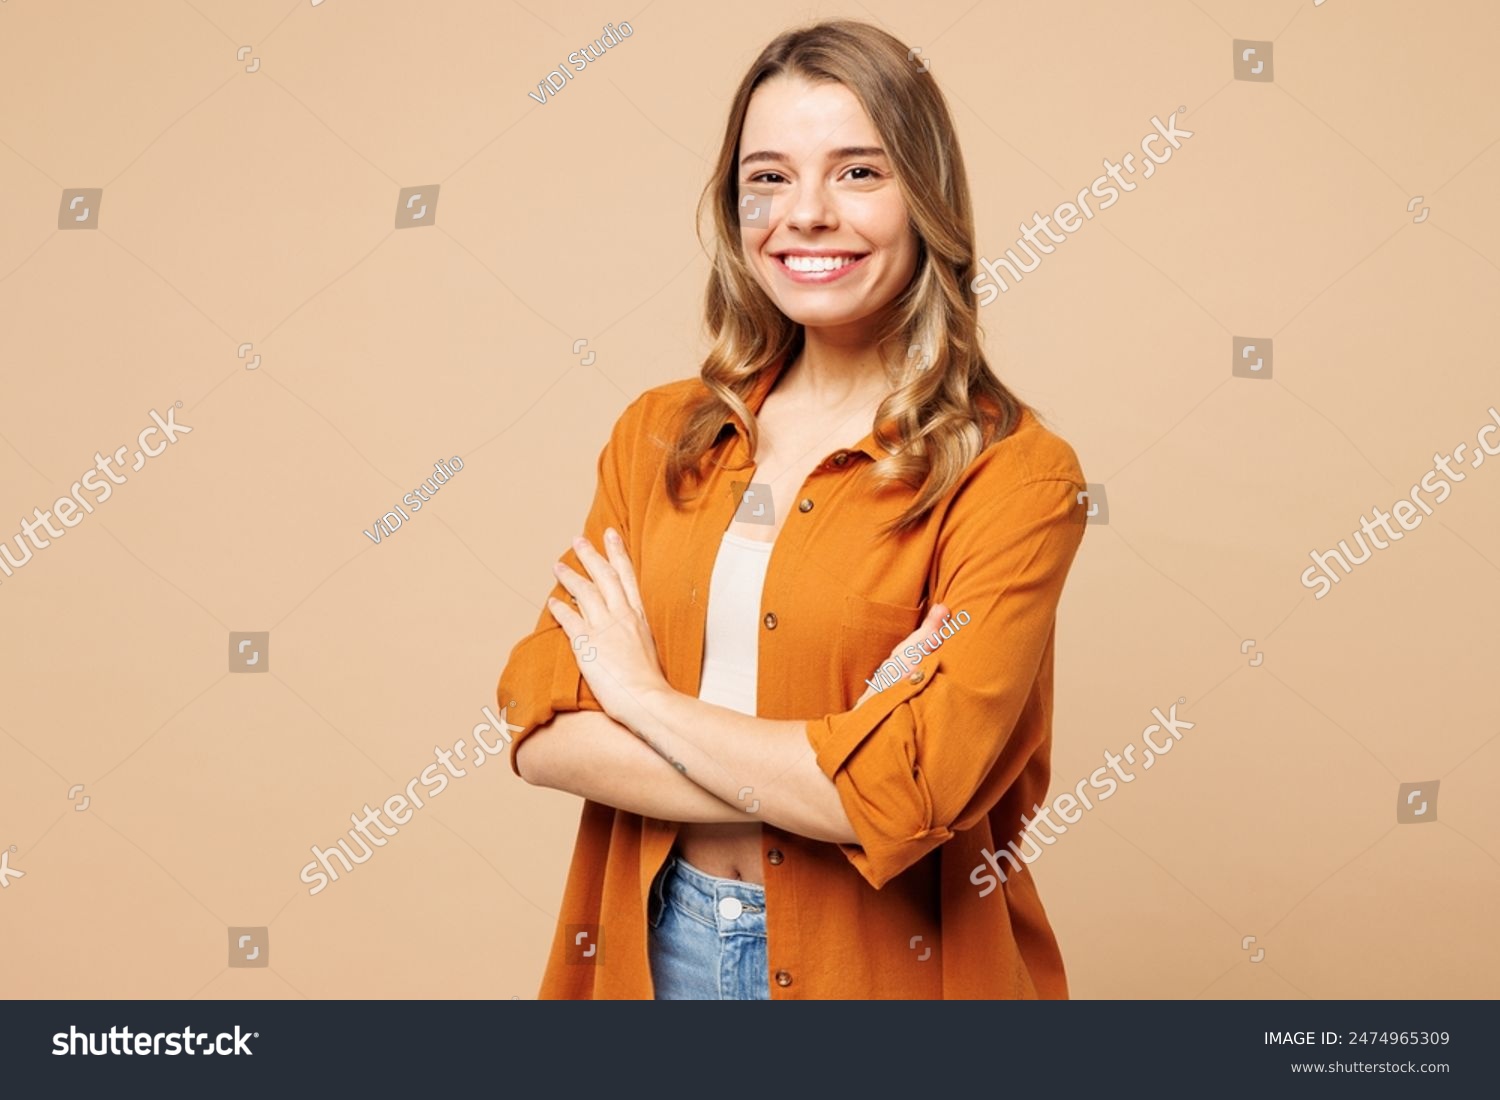 Vista lateral joven mujer caucásica sonriente que usa camisa naranja ropa casual sostenga las manos cruzadas cámara de mirada doblada aislada en liso pastel luz beige retrato de estudio de fondo. Concepto de estilo de vida